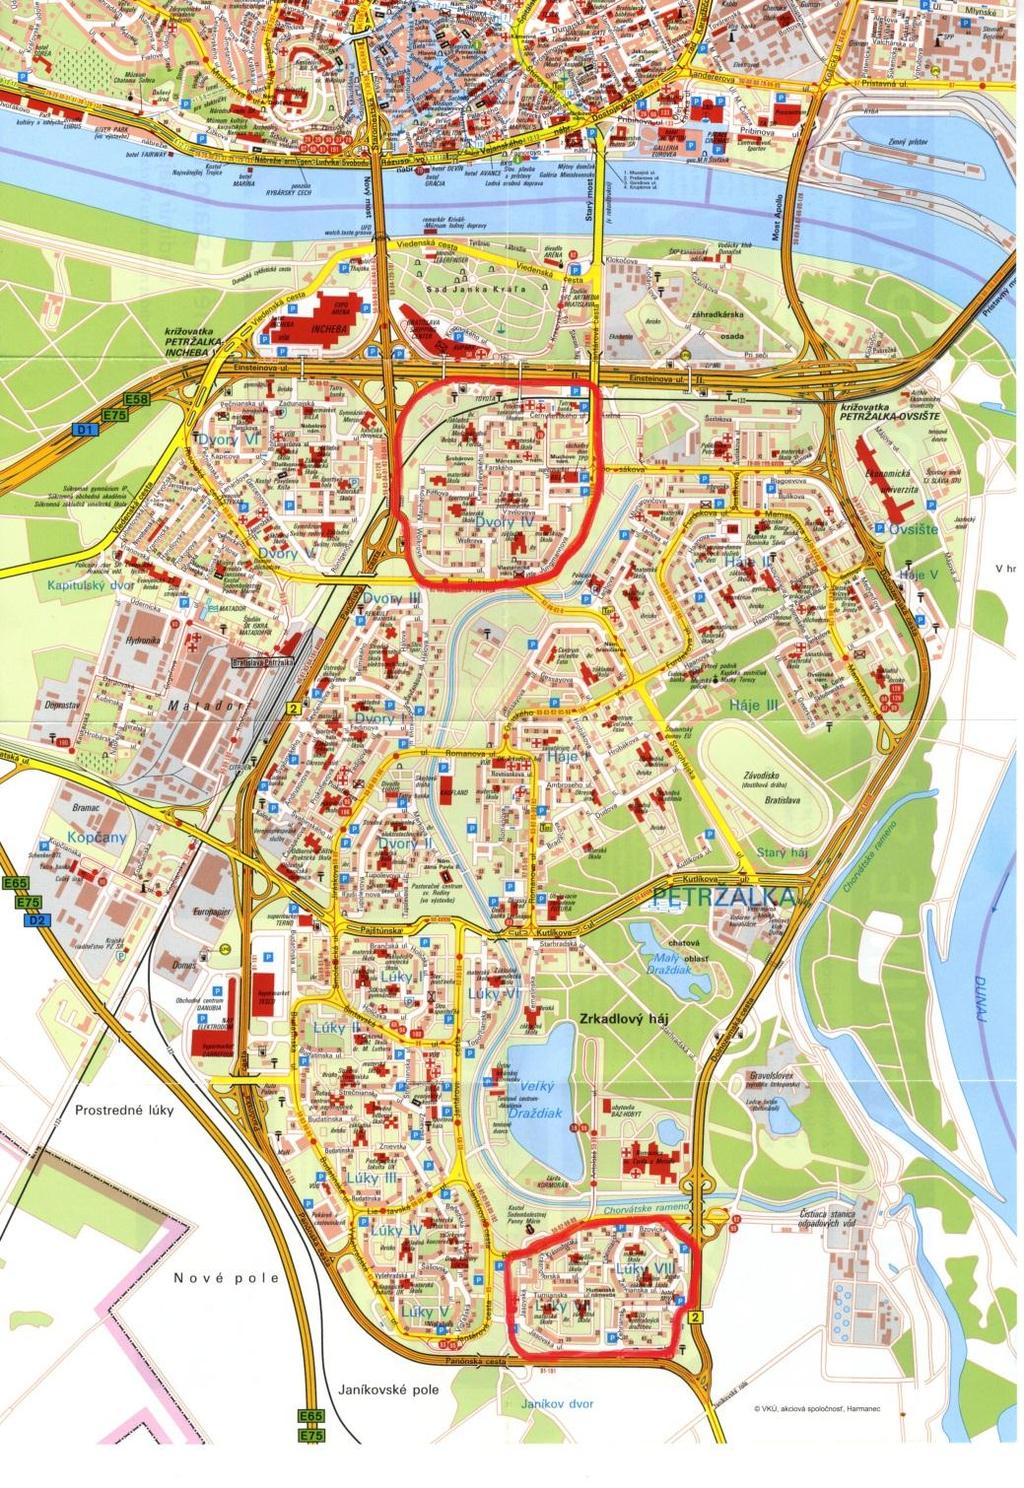 I. Analýza súčasného stavu statickej dopravy vo vytipovaných lokalitách mestskej časti Bratislava-Petržalka: Pre realizáciu